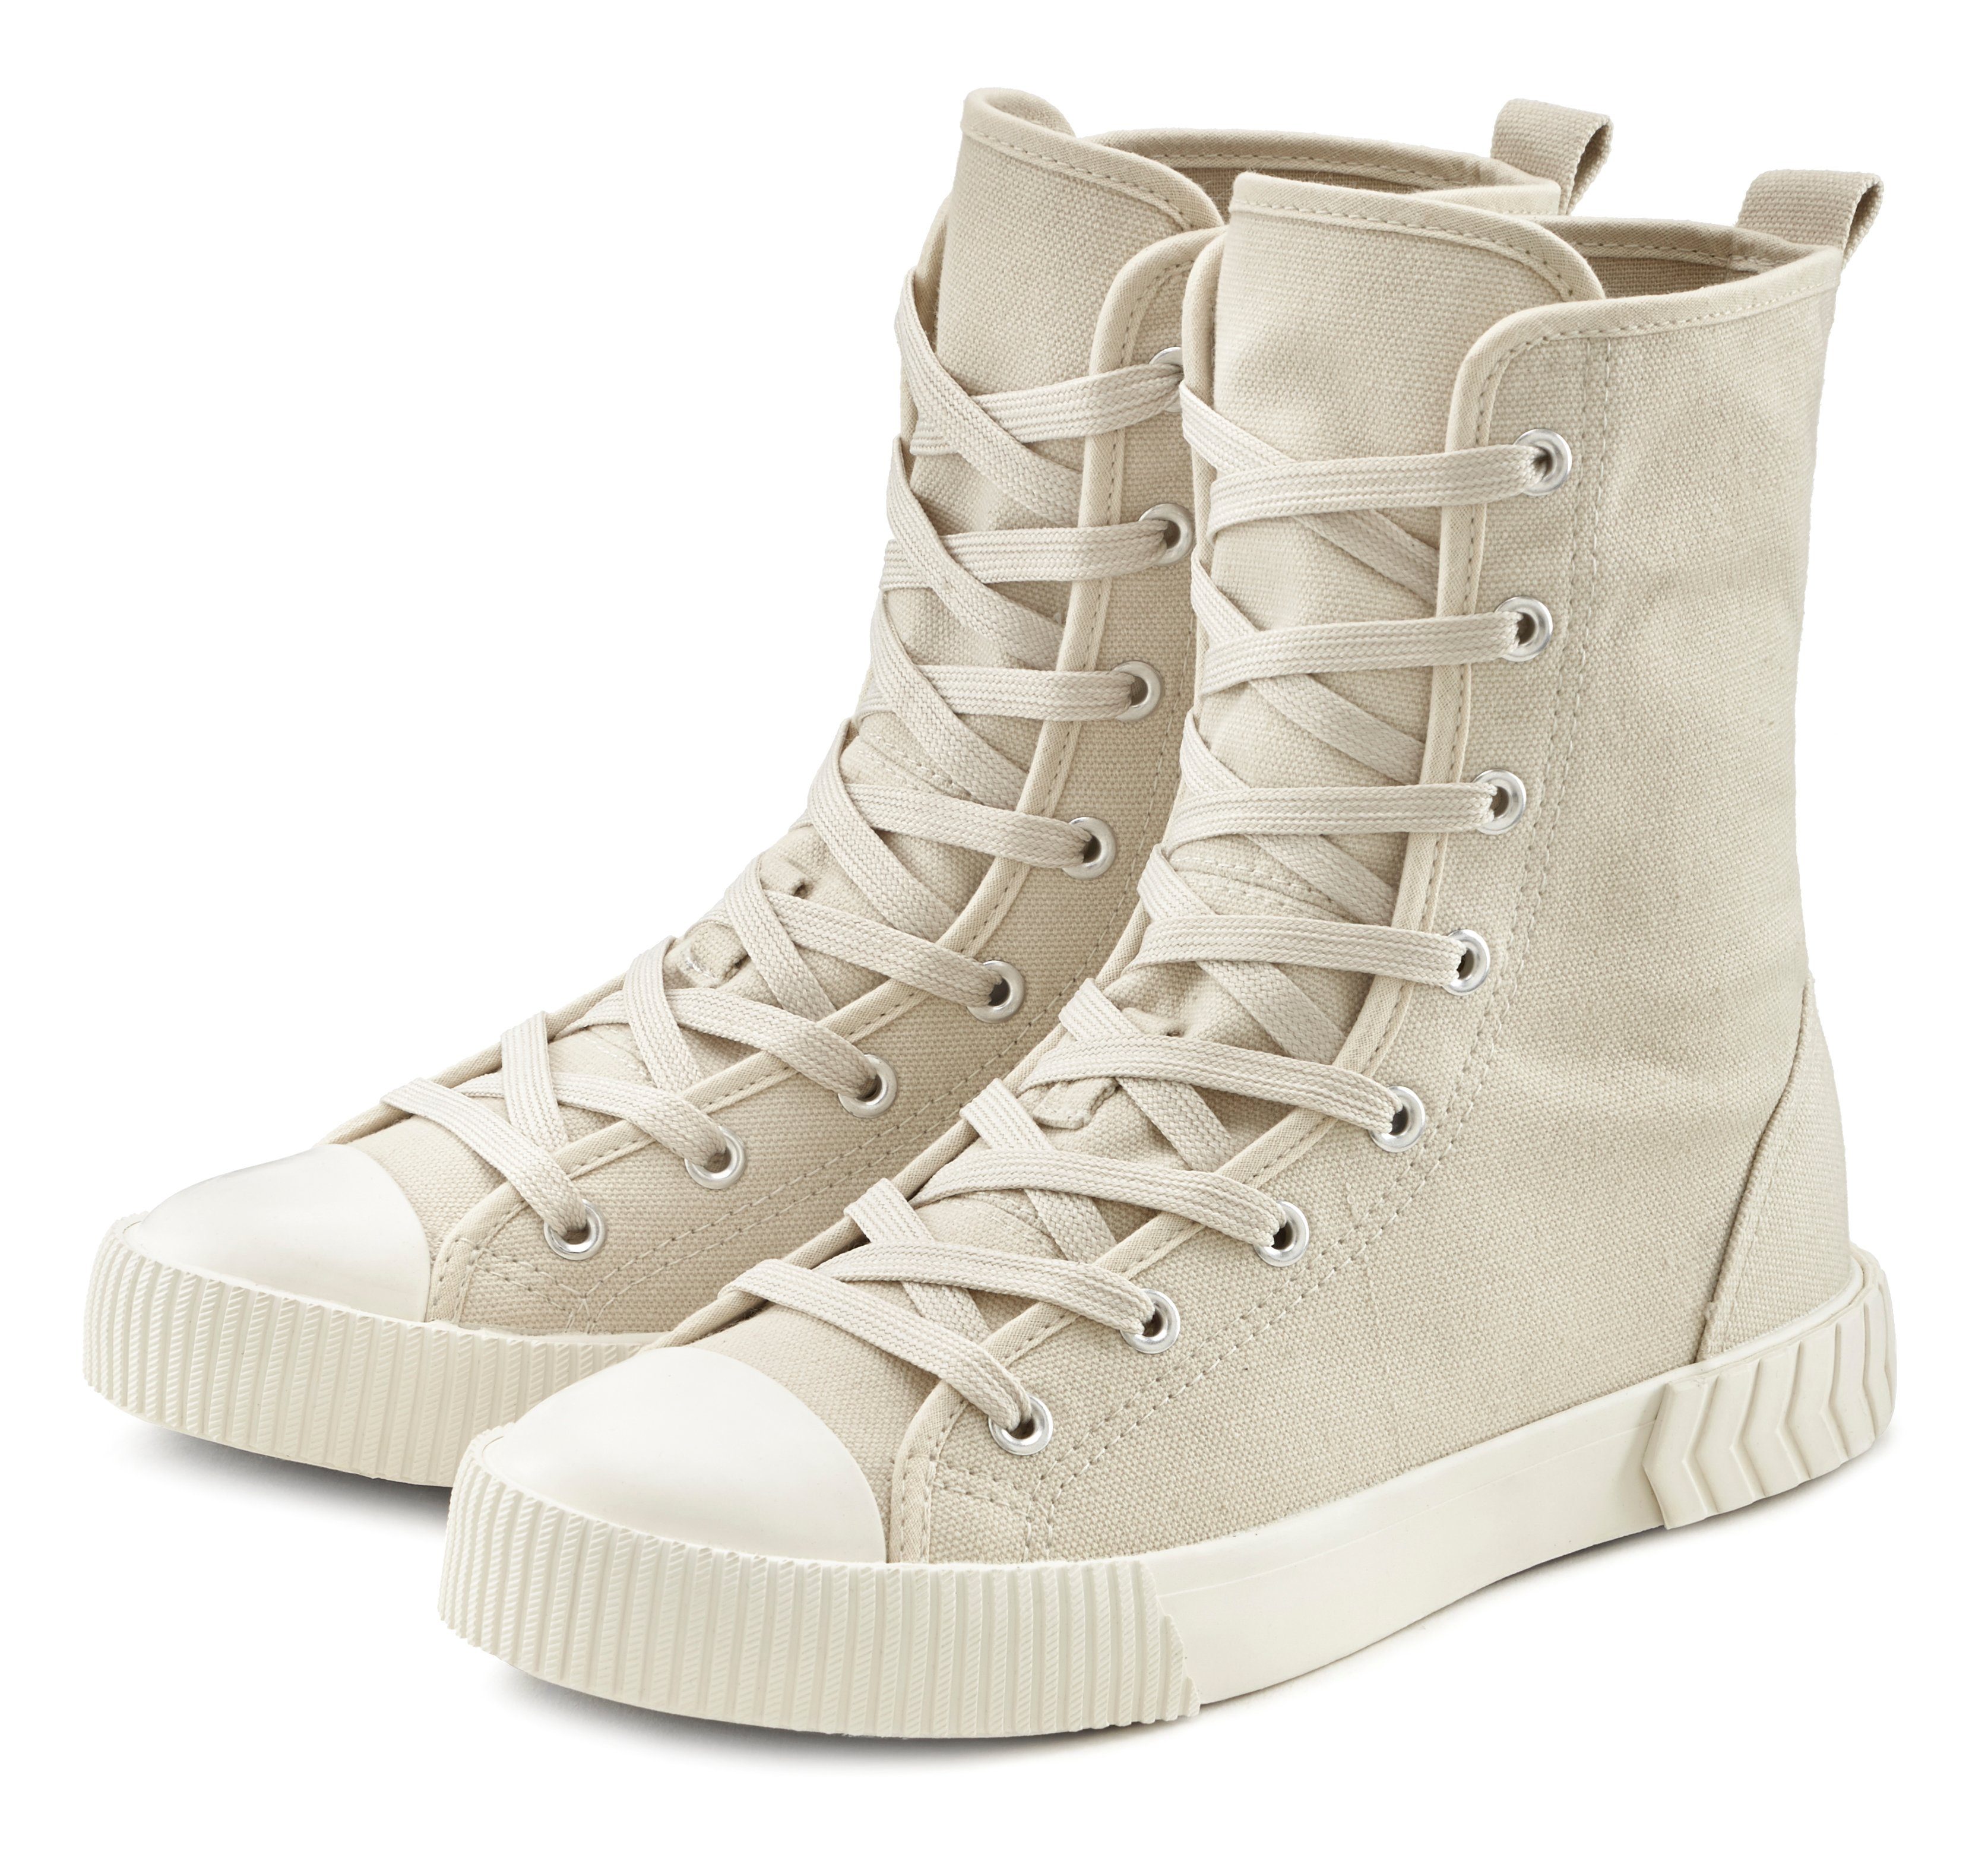 LASCANA Stiefelette High Top Sneaker aus Textil im trendigen Combat Look  online kaufen | OTTO